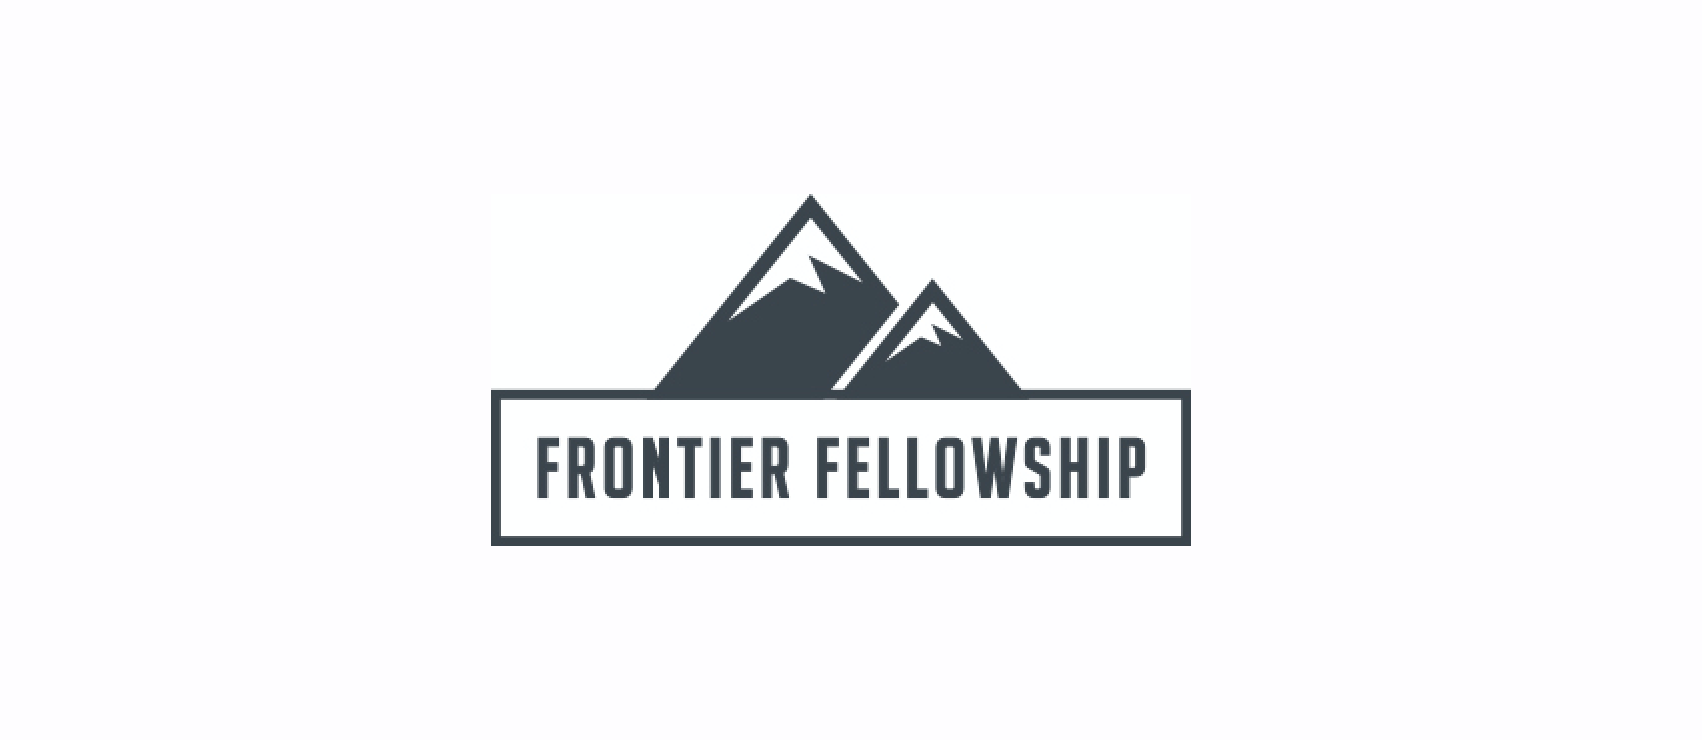 Frontier Fellowship logo